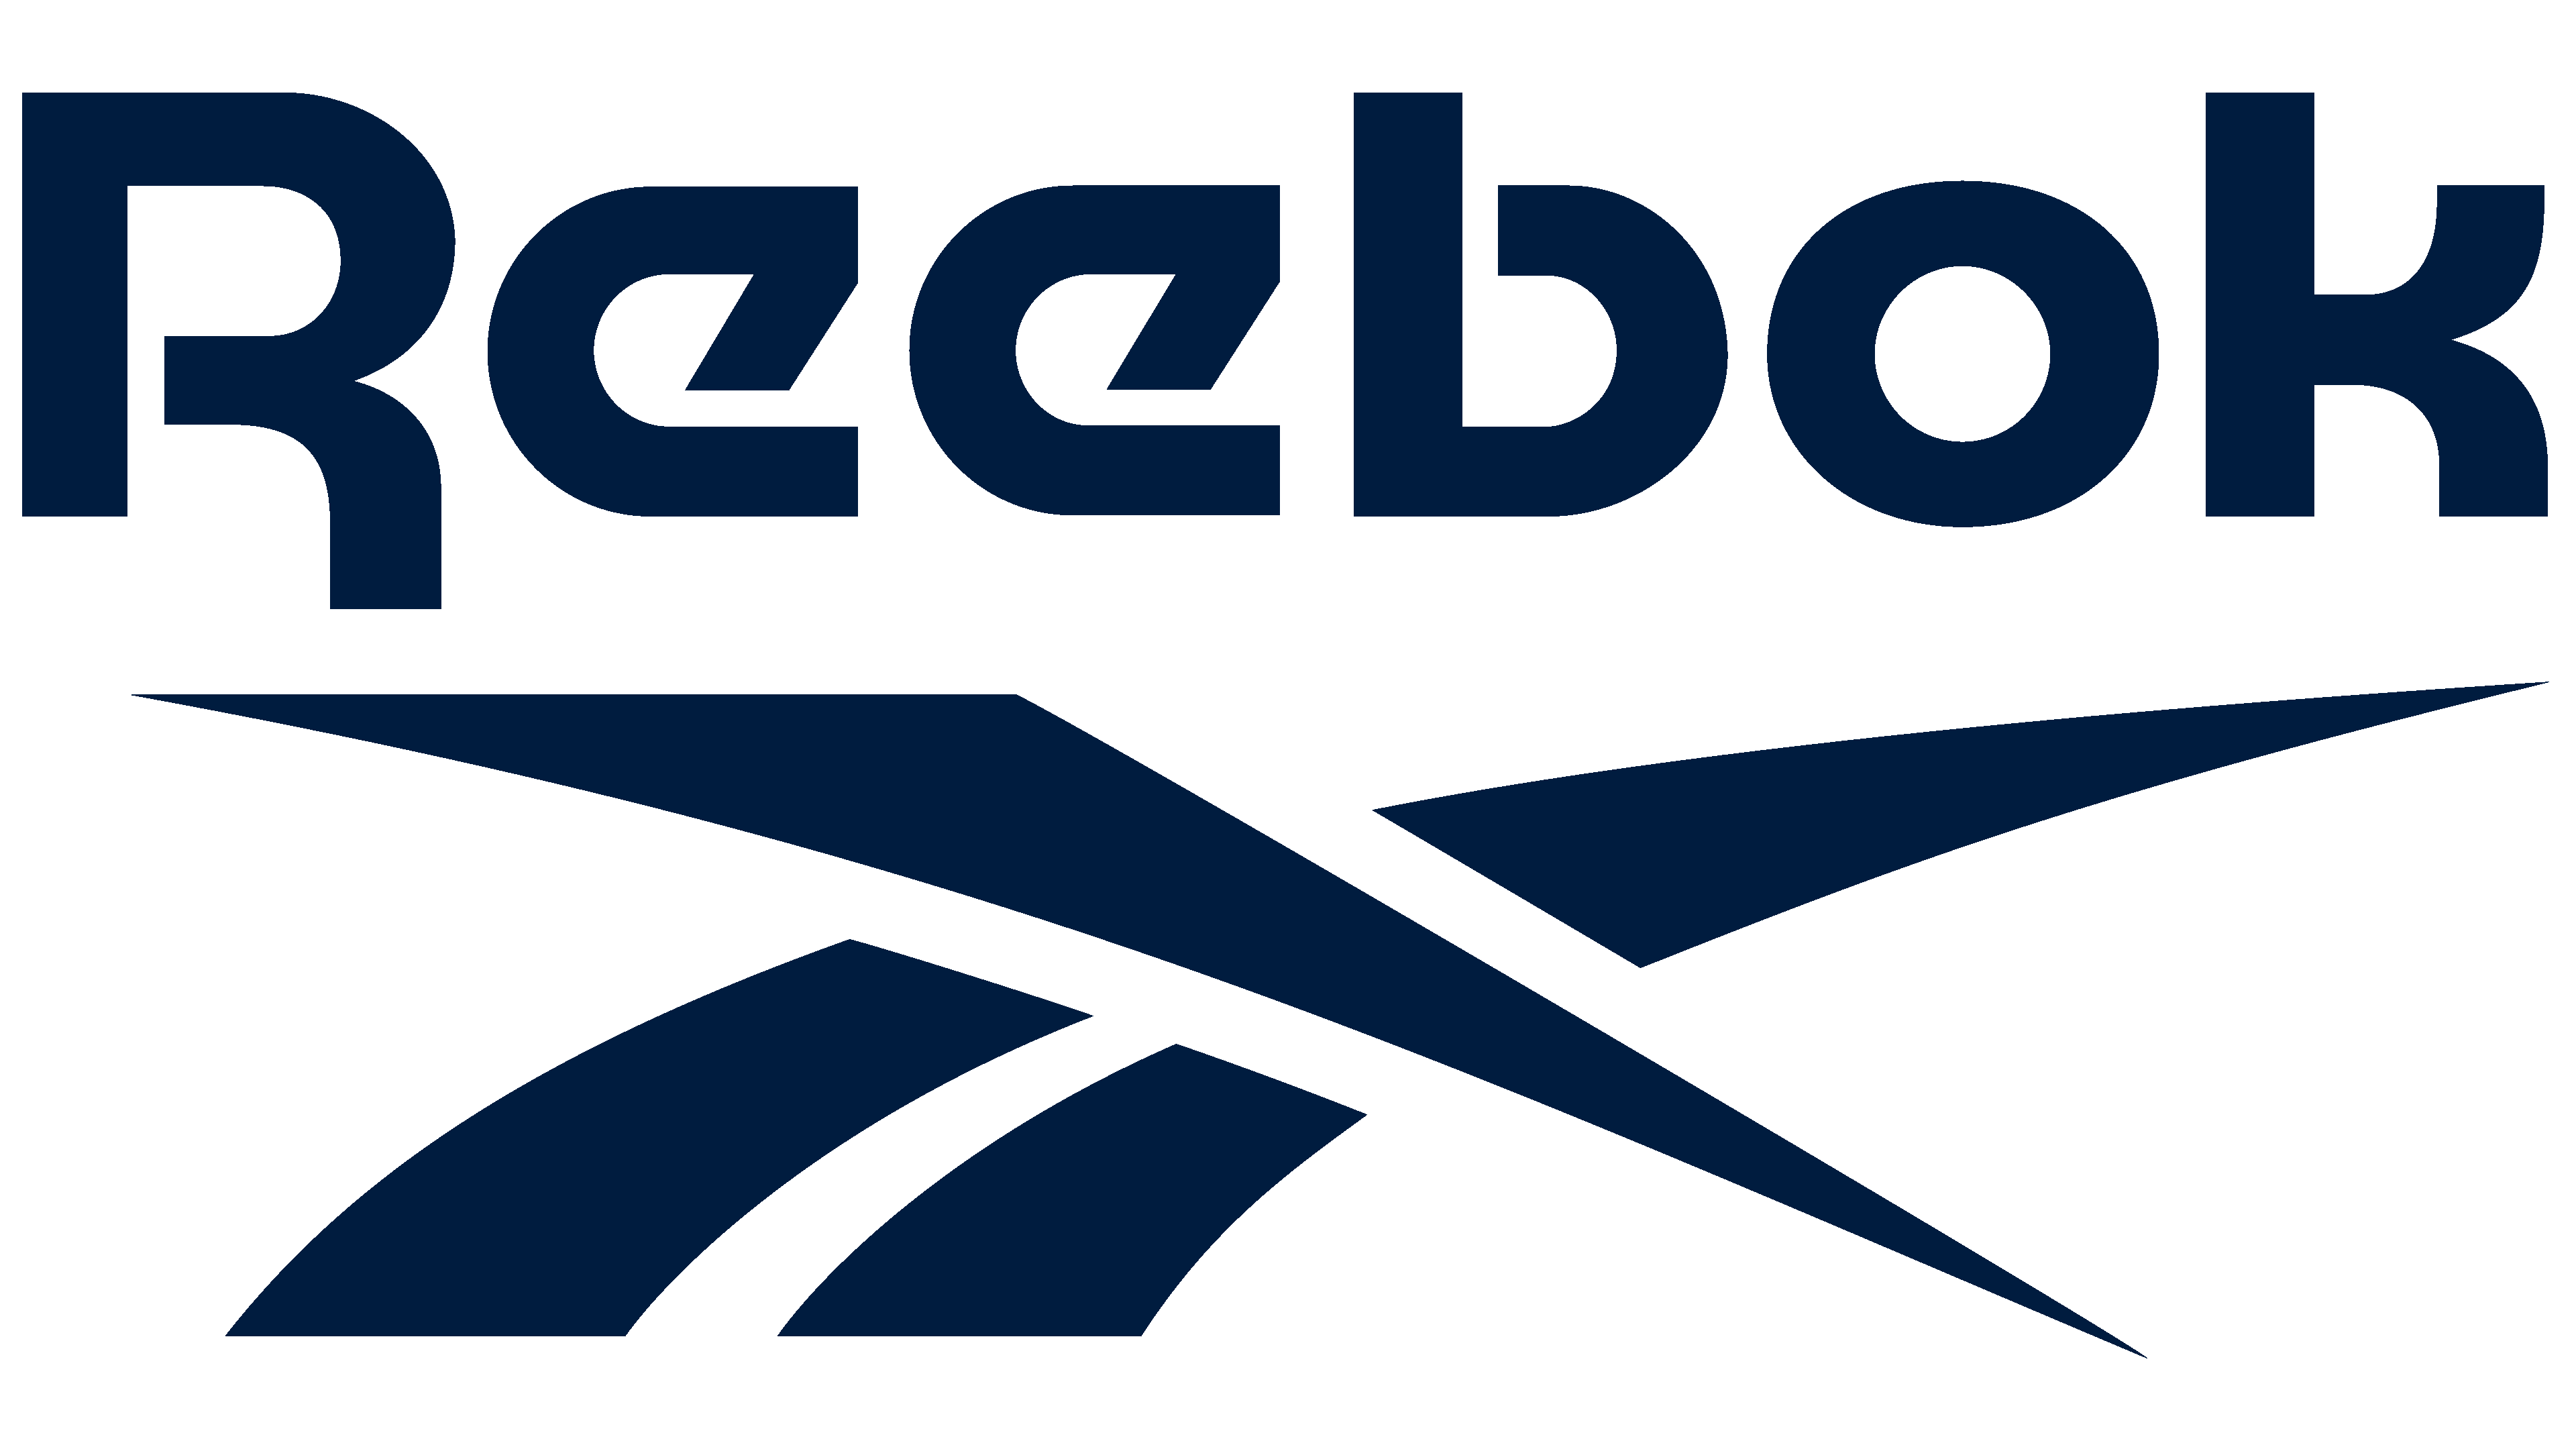 el logo de reebok